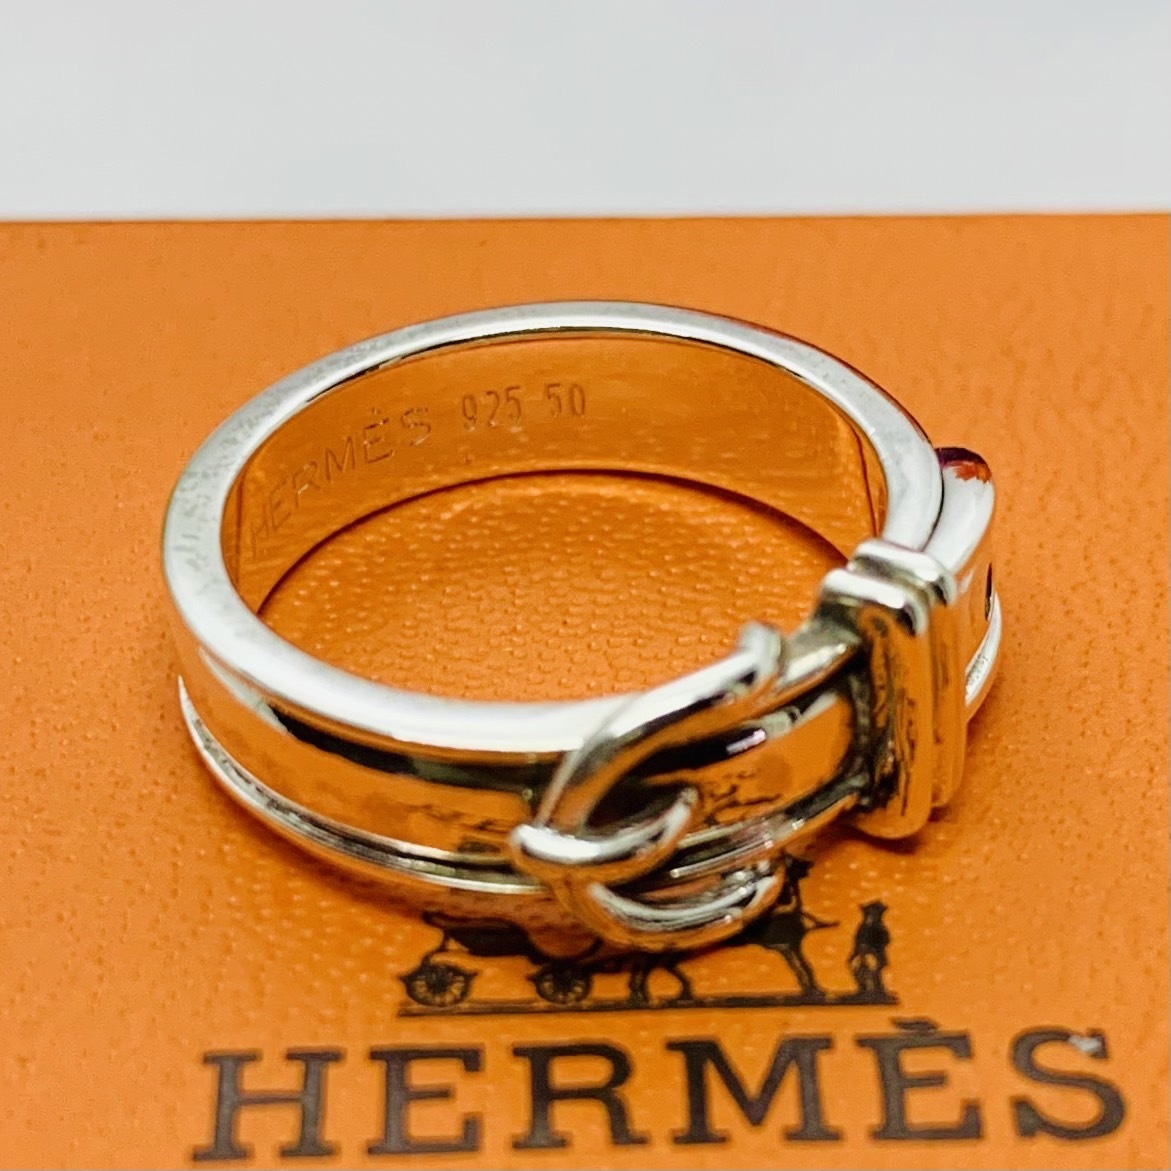 C261 редкий первый период передвижной type превосходный товар Hermes гибрид сельдерея и салата -ru черный a кольцо печать 50